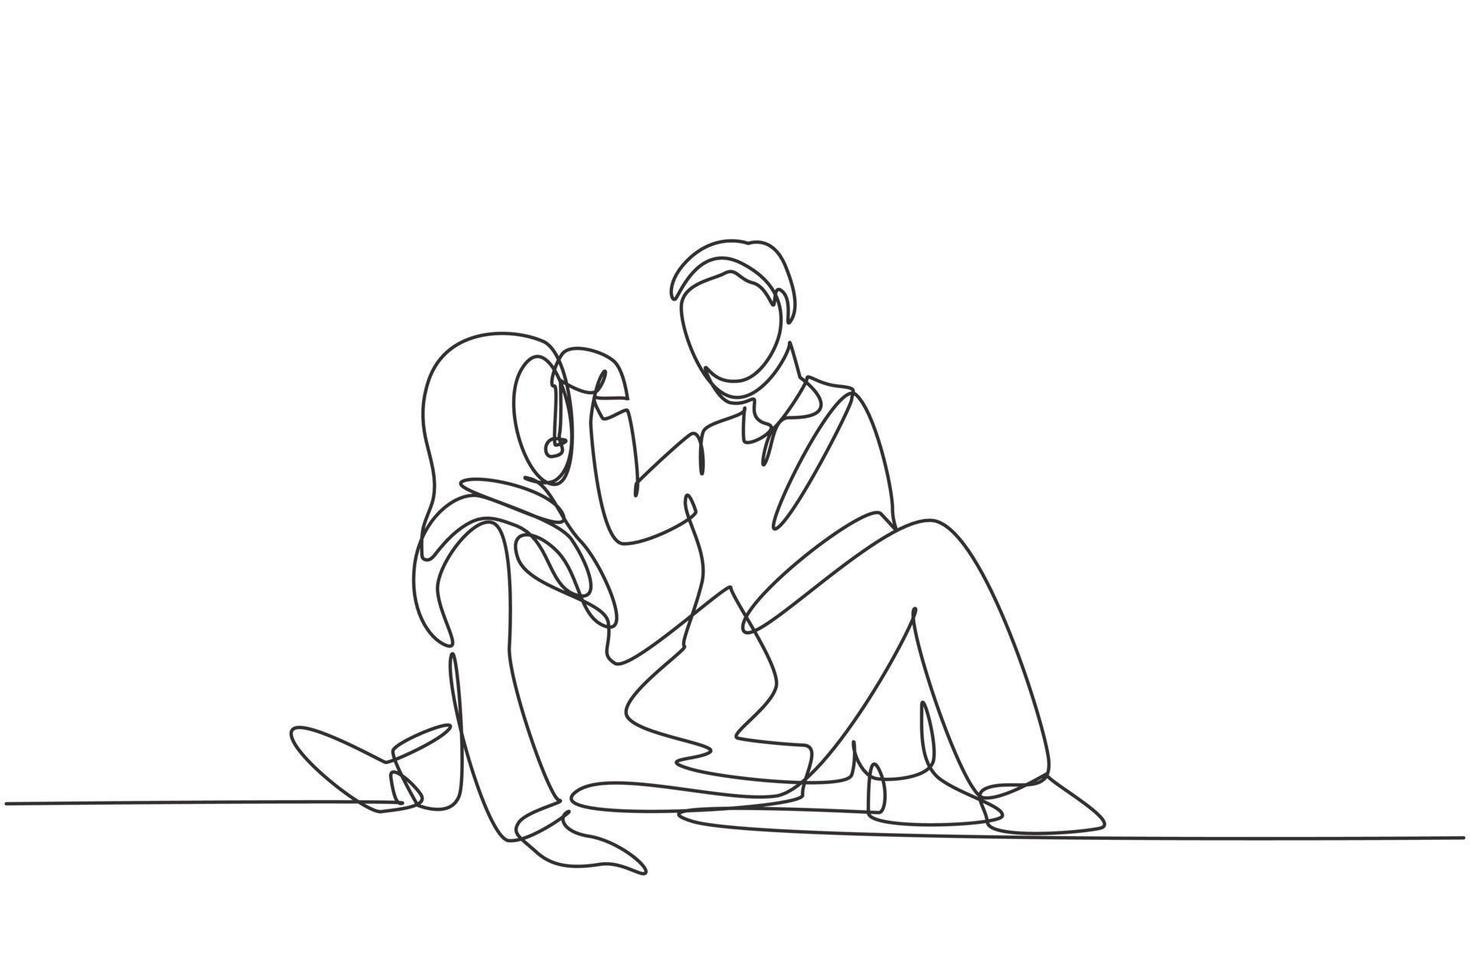 única linha contínua desenho romântico casal árabe fazendo piquenique no parque. relaxando juntos sentados no chão e os homens dando uvas para as mulheres. ilustração em vetor desenho gráfico de uma linha